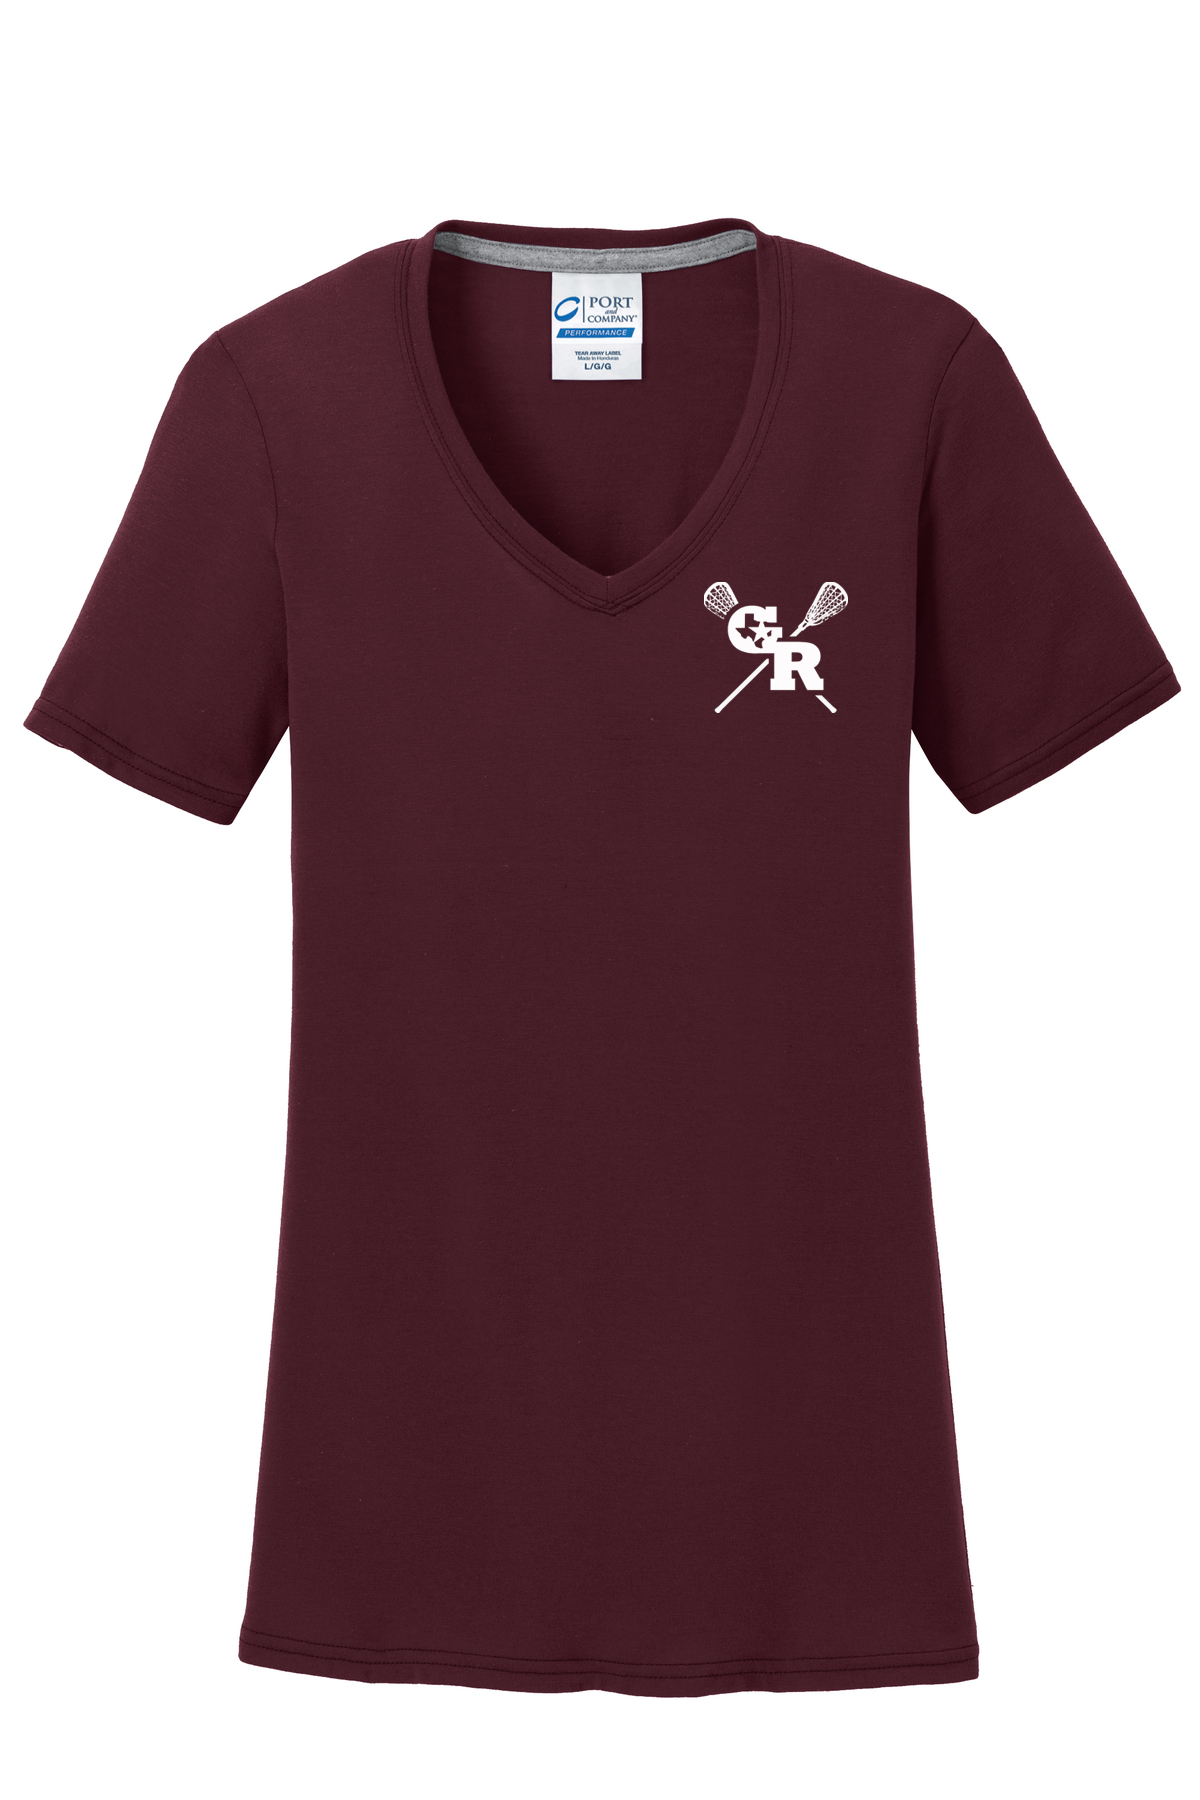 GR Longhorns Lacrosse Women's T-Shirt